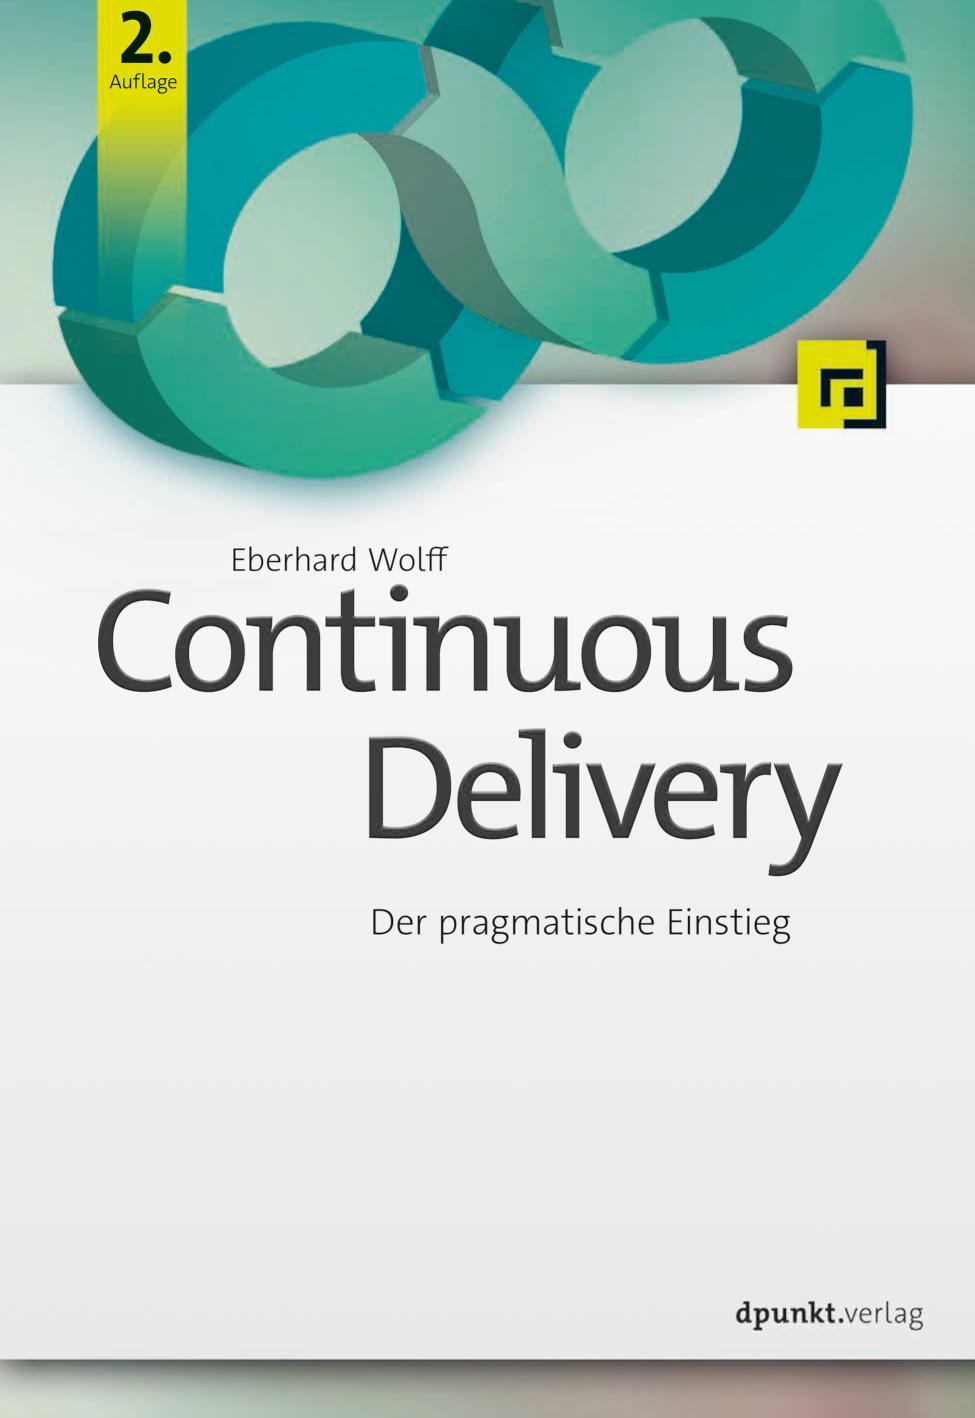 Continuous Delivery Der pragmatische Einstieg